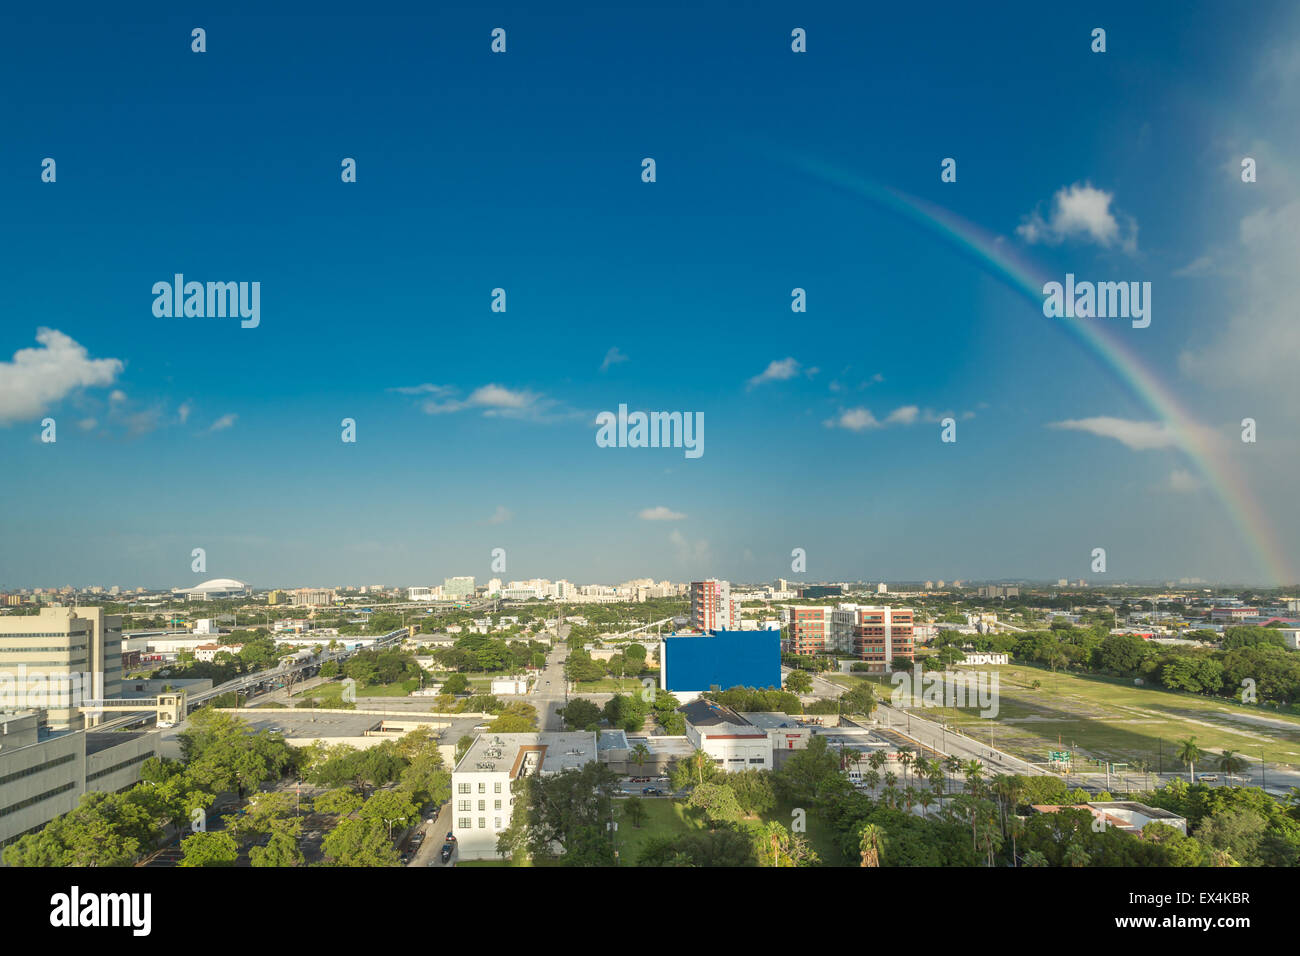 Luftbild von der Innenstadt von Miami, Florida, zeigen die bunten Hochhäuser und dichten Gebäuden Stockfoto